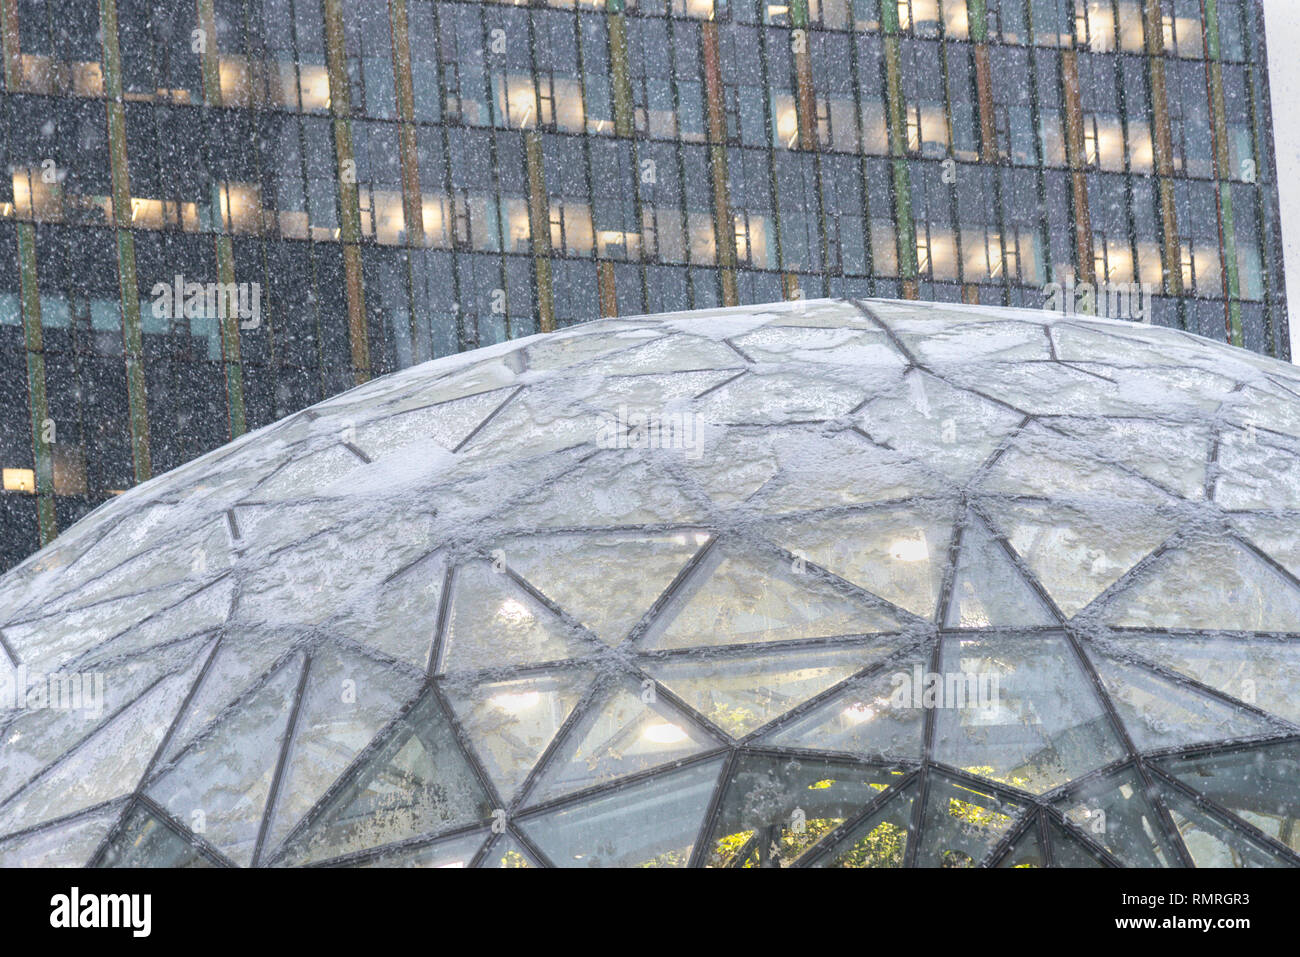 Seattle, Washington circa inverno 2019 la società Amazon la sede mondiale di sfere campus green house terrarium uffici durante una rara tempesta di neve. Foto Stock